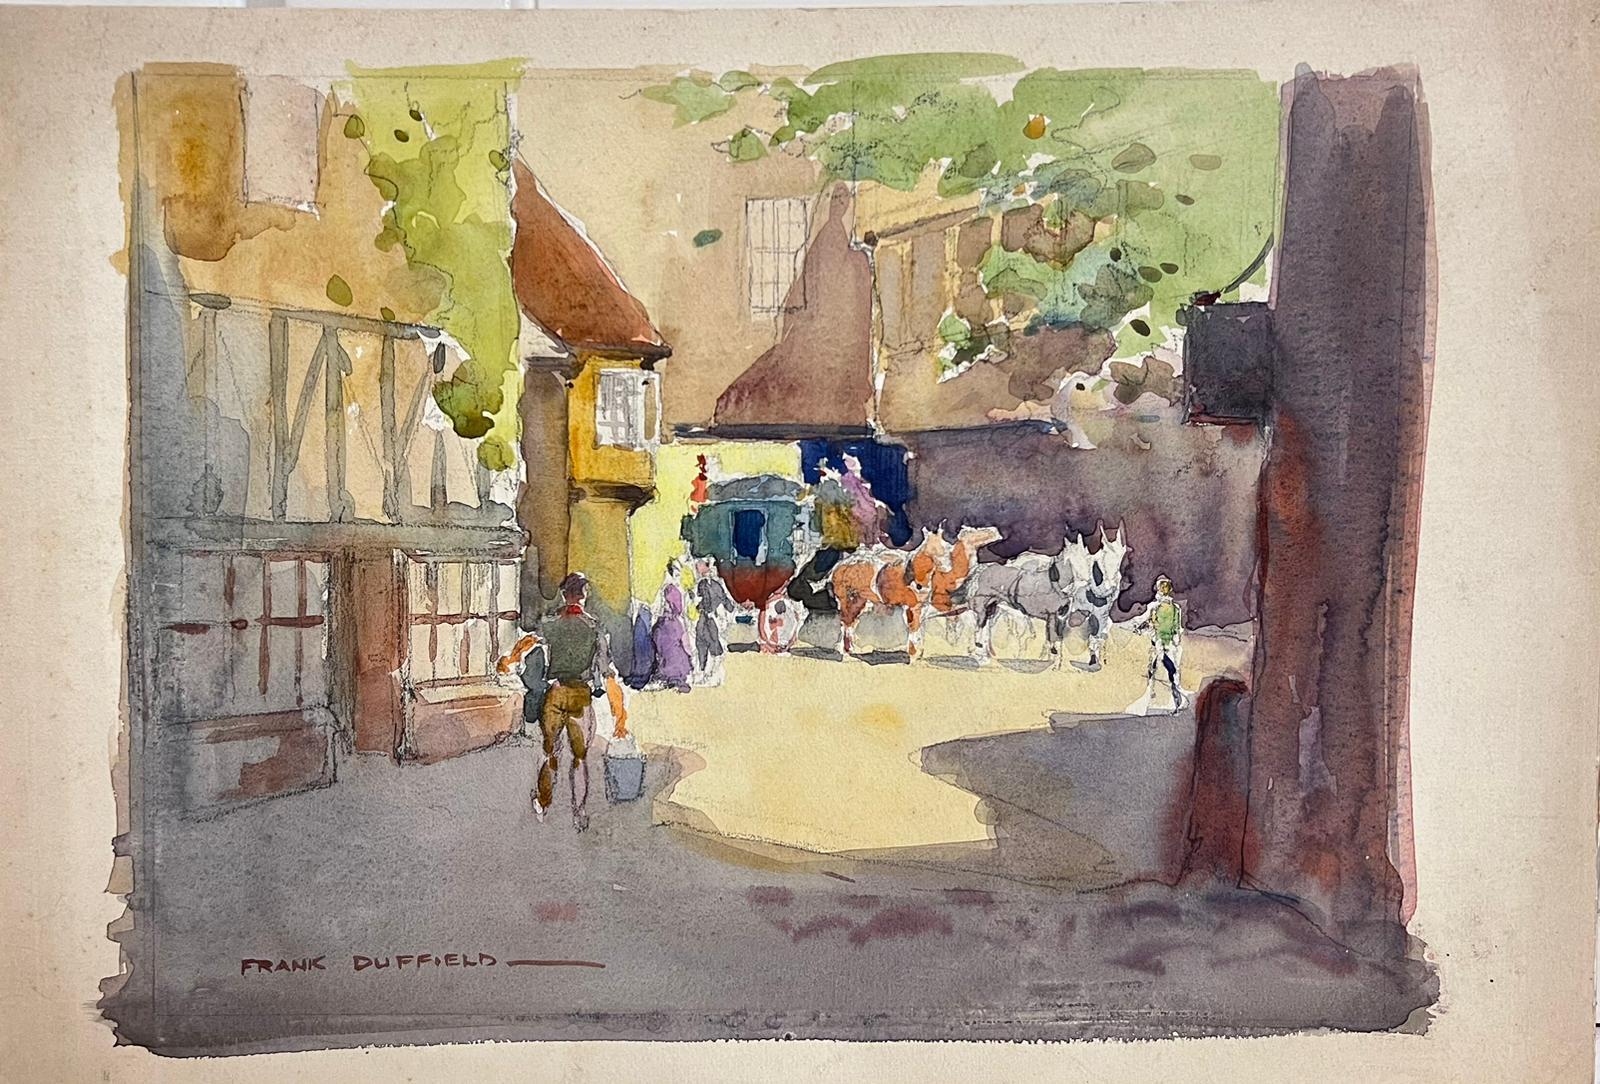 Horse & Carriage in Old English Village Lane, britisches Gemälde des 20. Jahrhunderts – Art von Frank Duffield